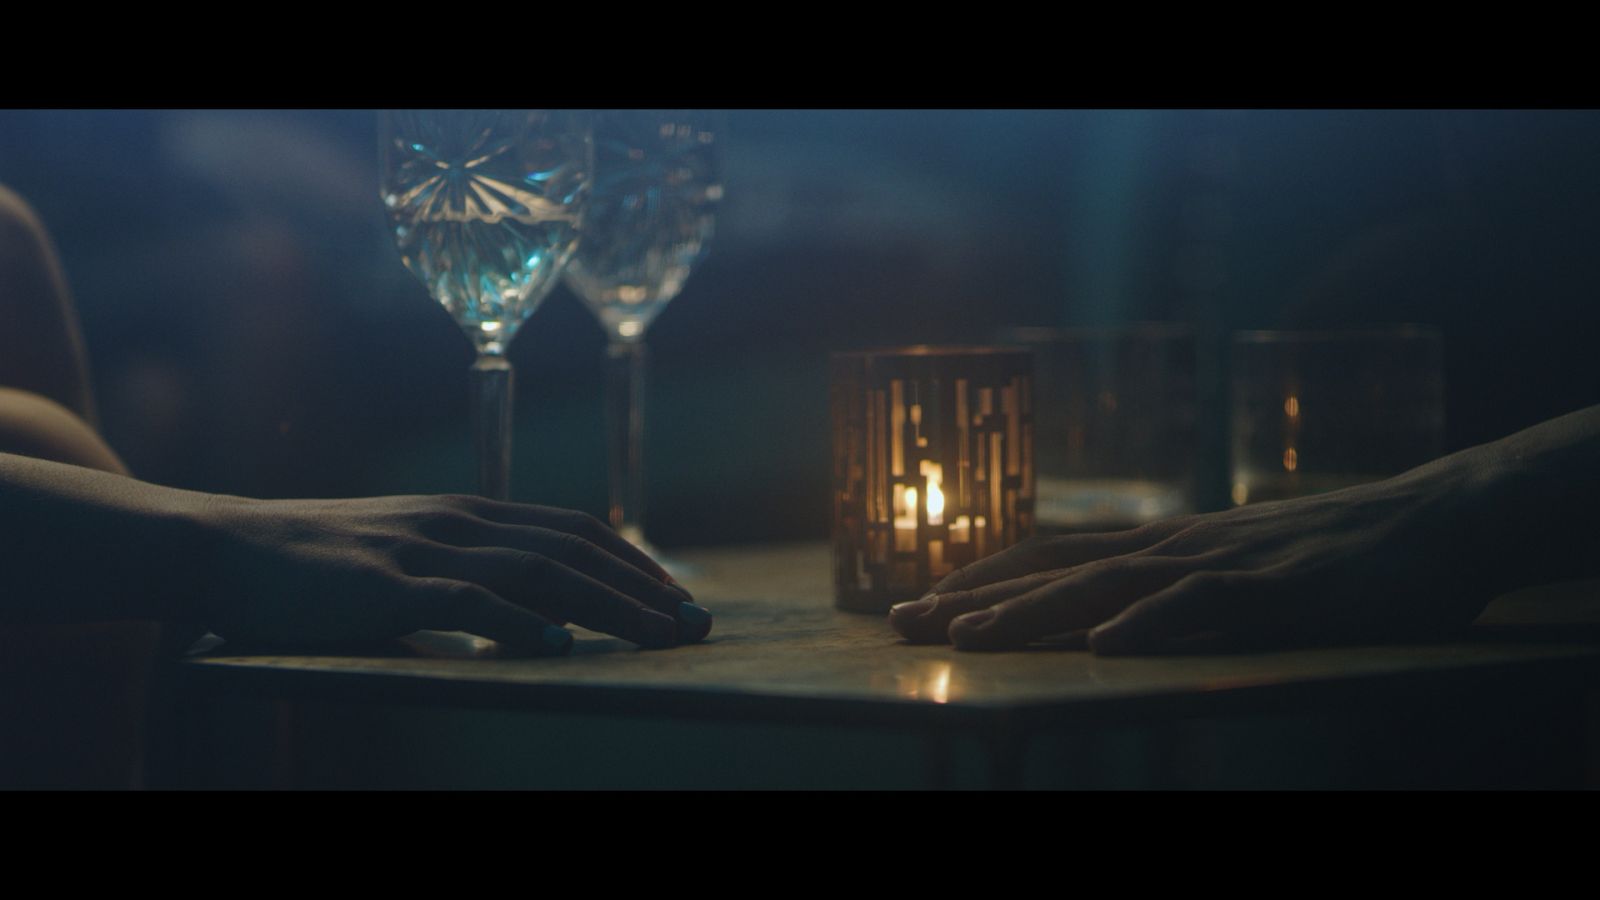 Video: PARA predstavila nový videoklip k piesni Svadobná. Prostredníctvom rúk odhaľujú najkrajší cit.